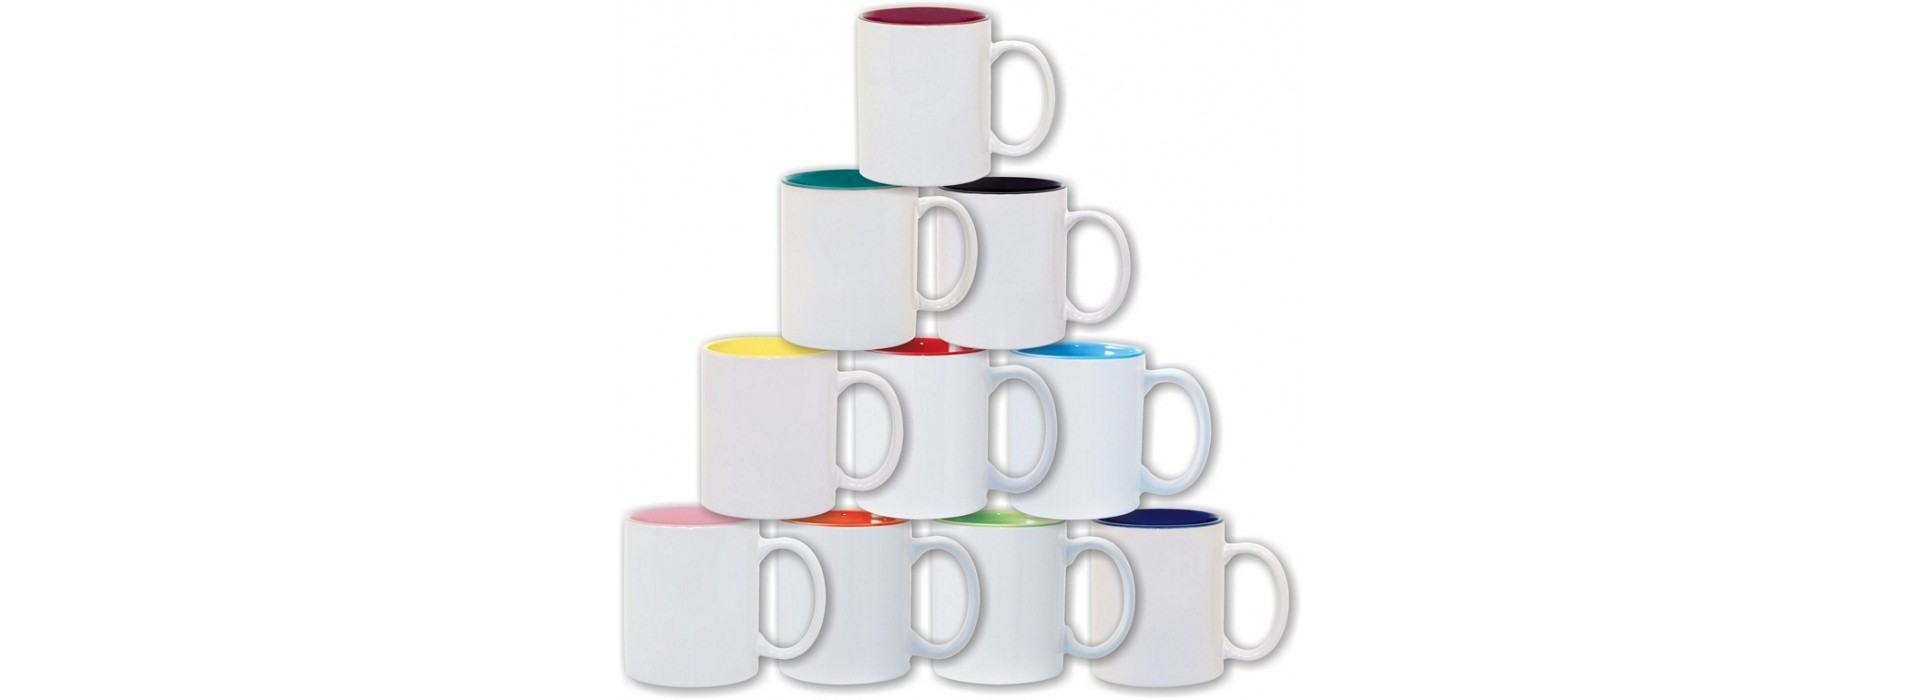 2 Tone Color Mugs